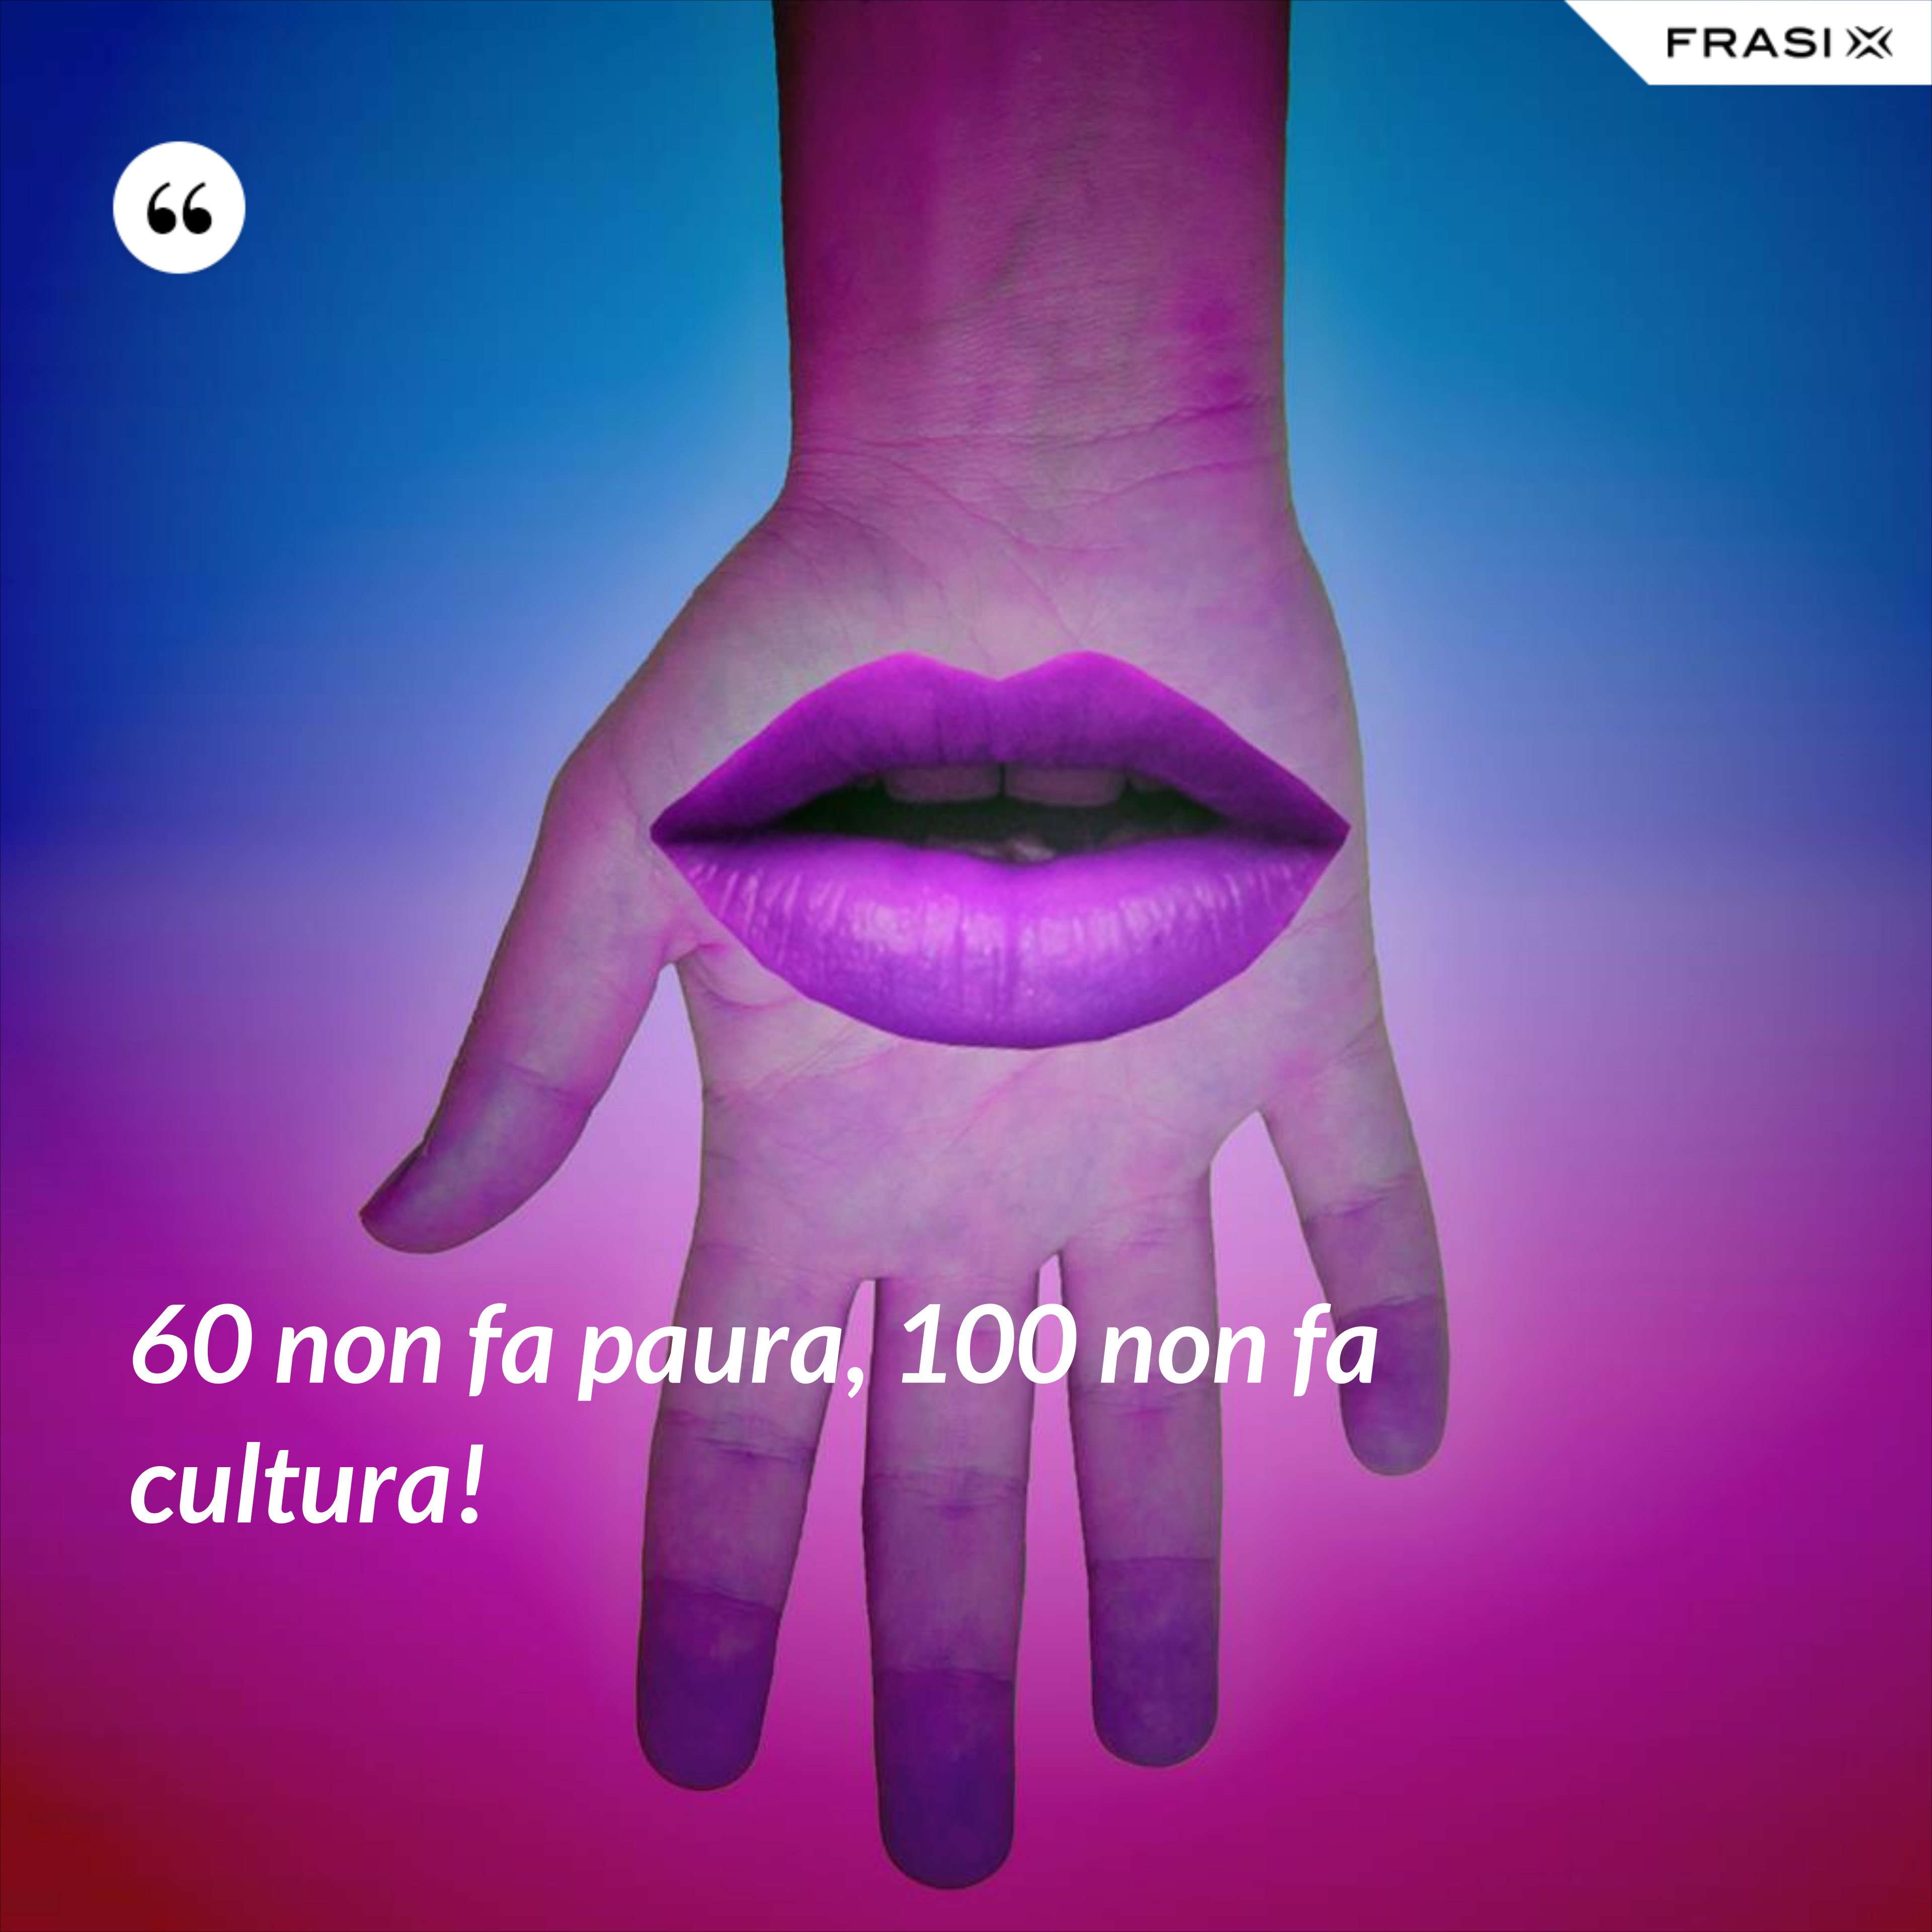 60 non fa paura, 100 non fa cultura! - Anonimo